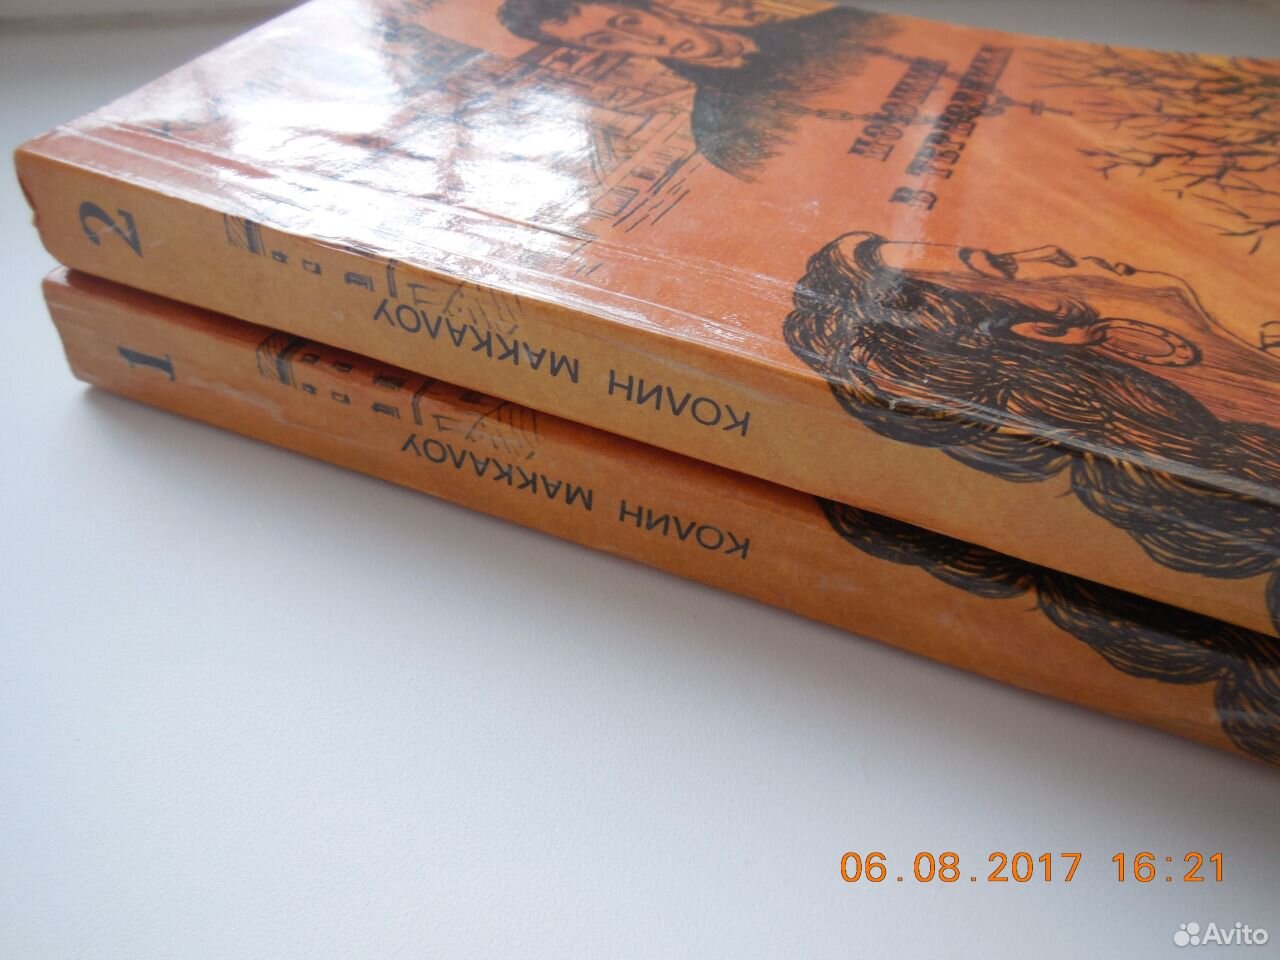 Самара авито книг. Авито книги. Книги на авито в Москве продать.